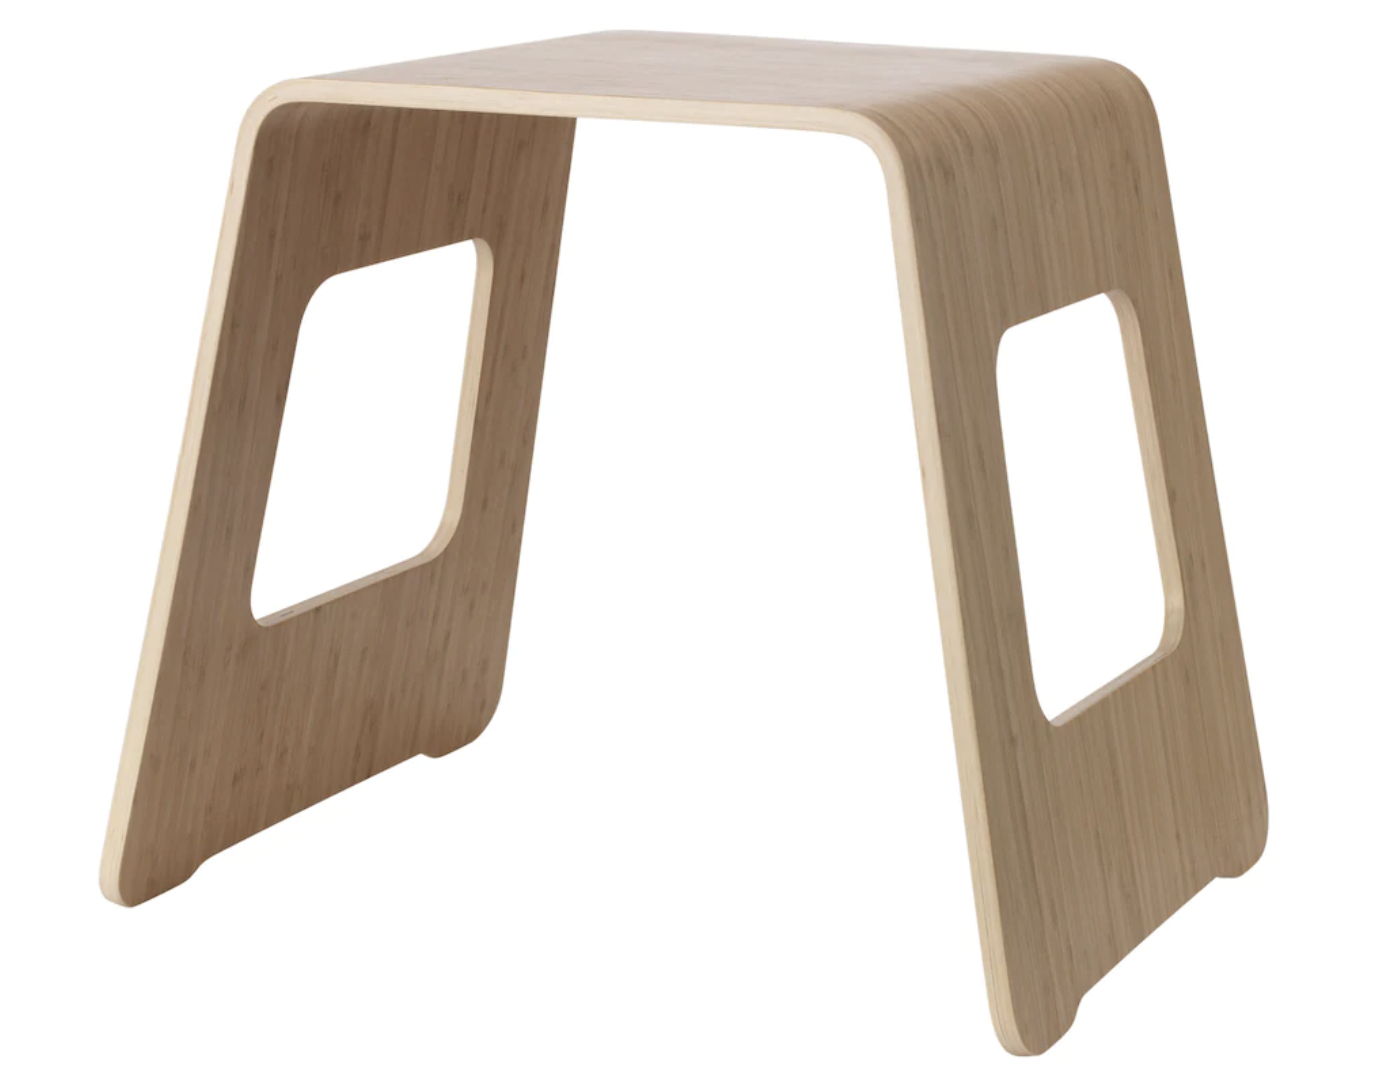 （16）平らな座面だから物も置きやすい！表面は耐久性に優れた竹を使用した「BENGTHÅKAN ベングトホーカン」